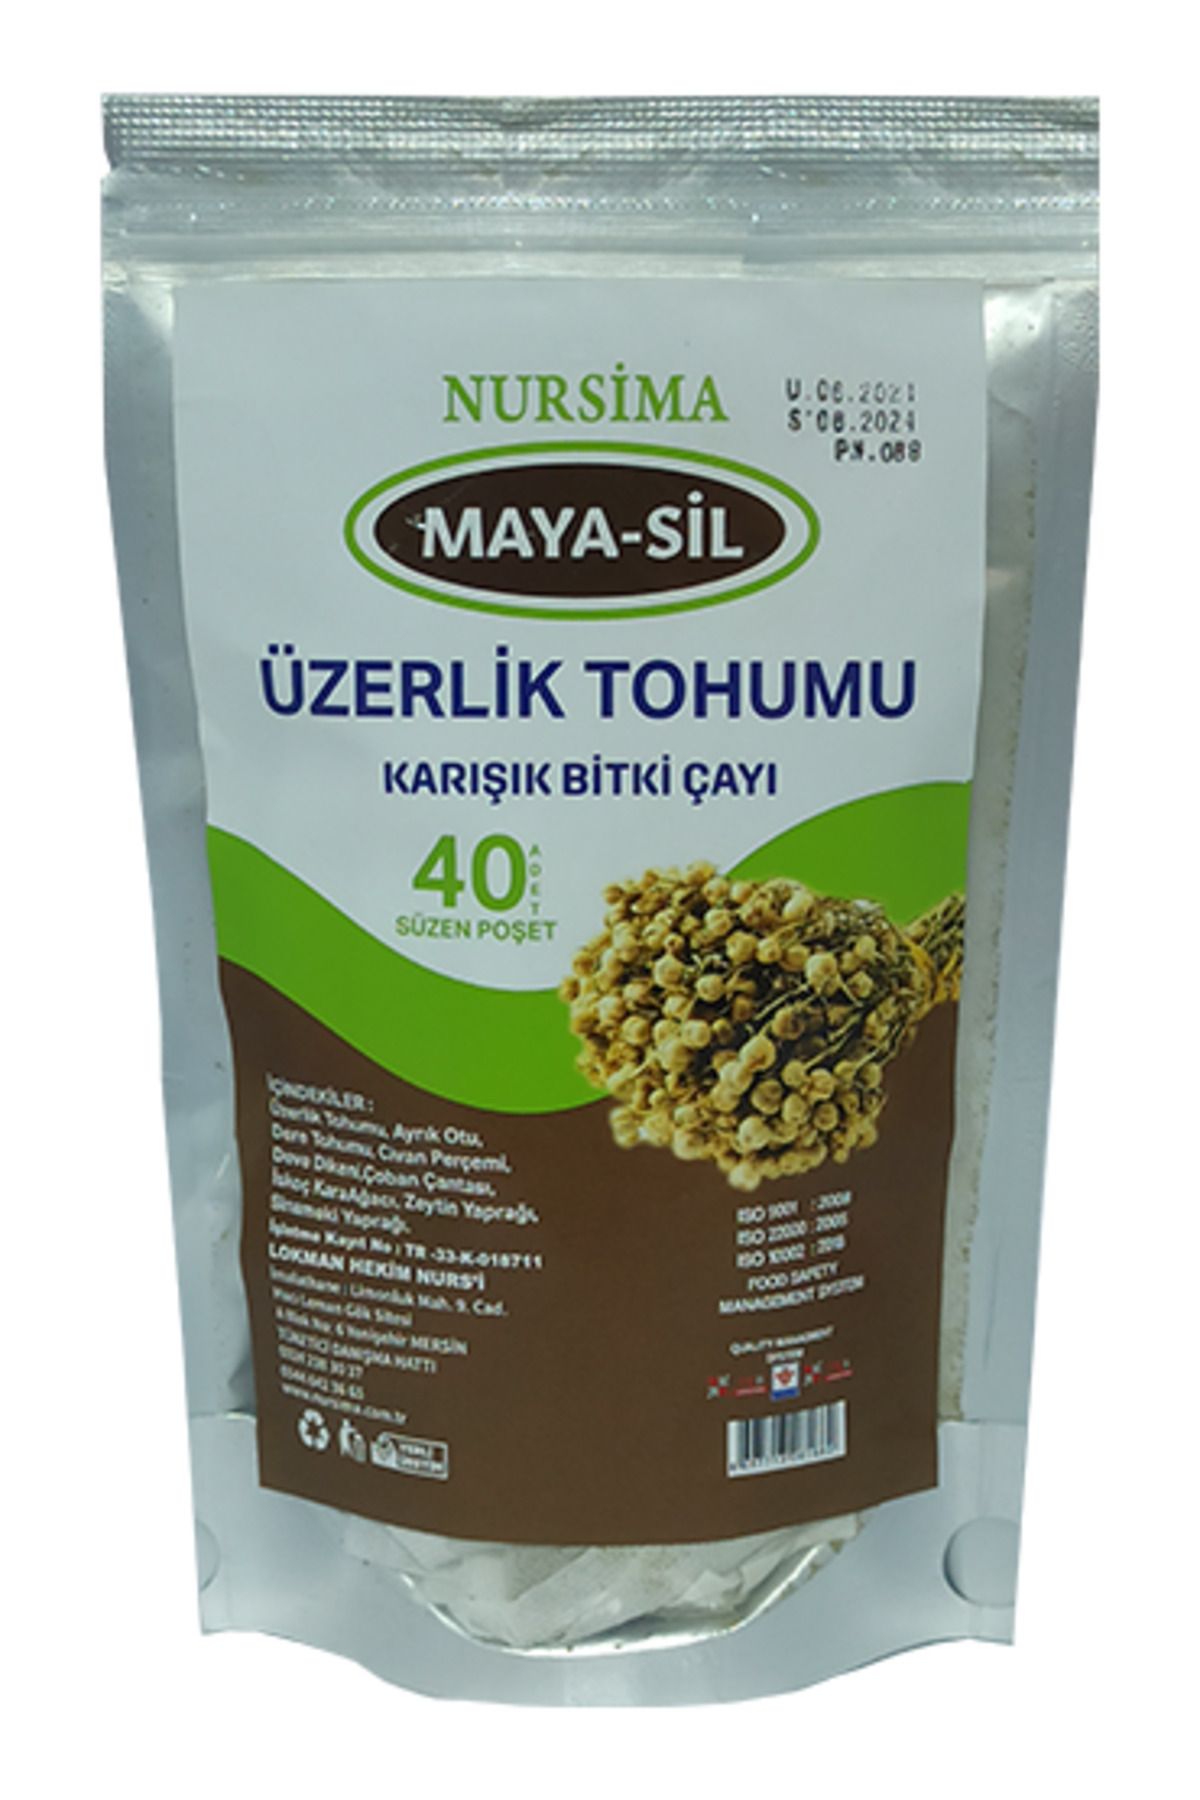 Nursima Maya-sil Üzerlik Tohumu Bitki Çayı 40 'lı Süzen Poşet